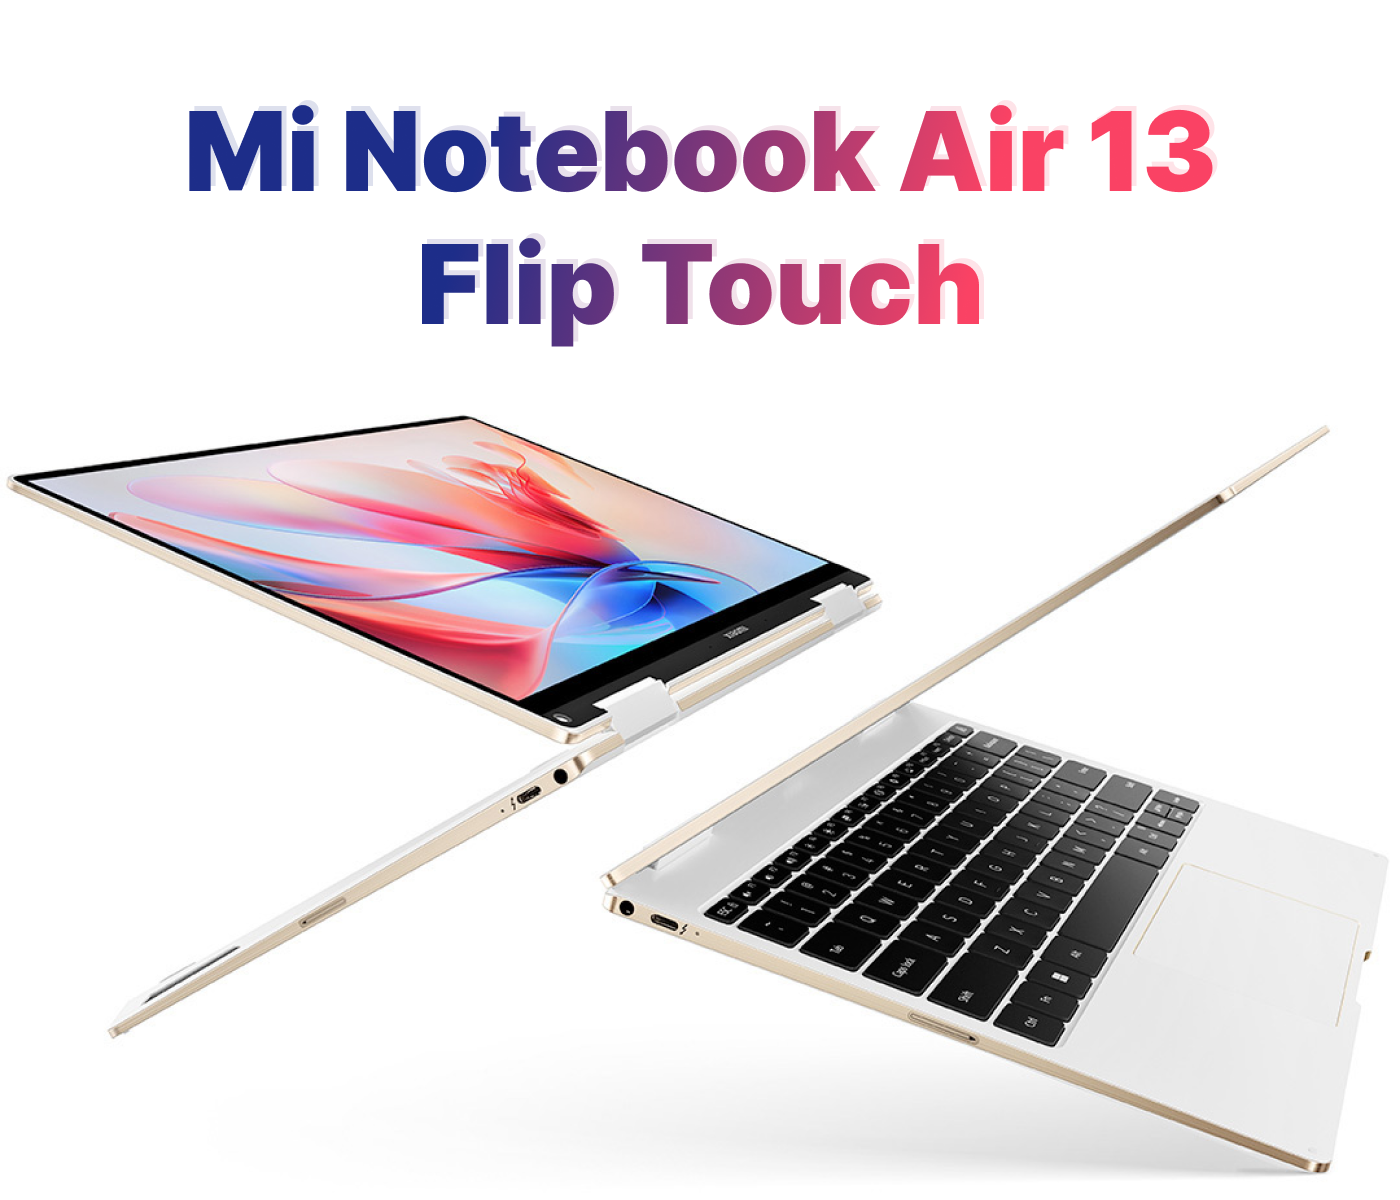 Купить ультрабук-трансформер Xiaomi Mi Notebook Air 13 Flip Touch в Москве